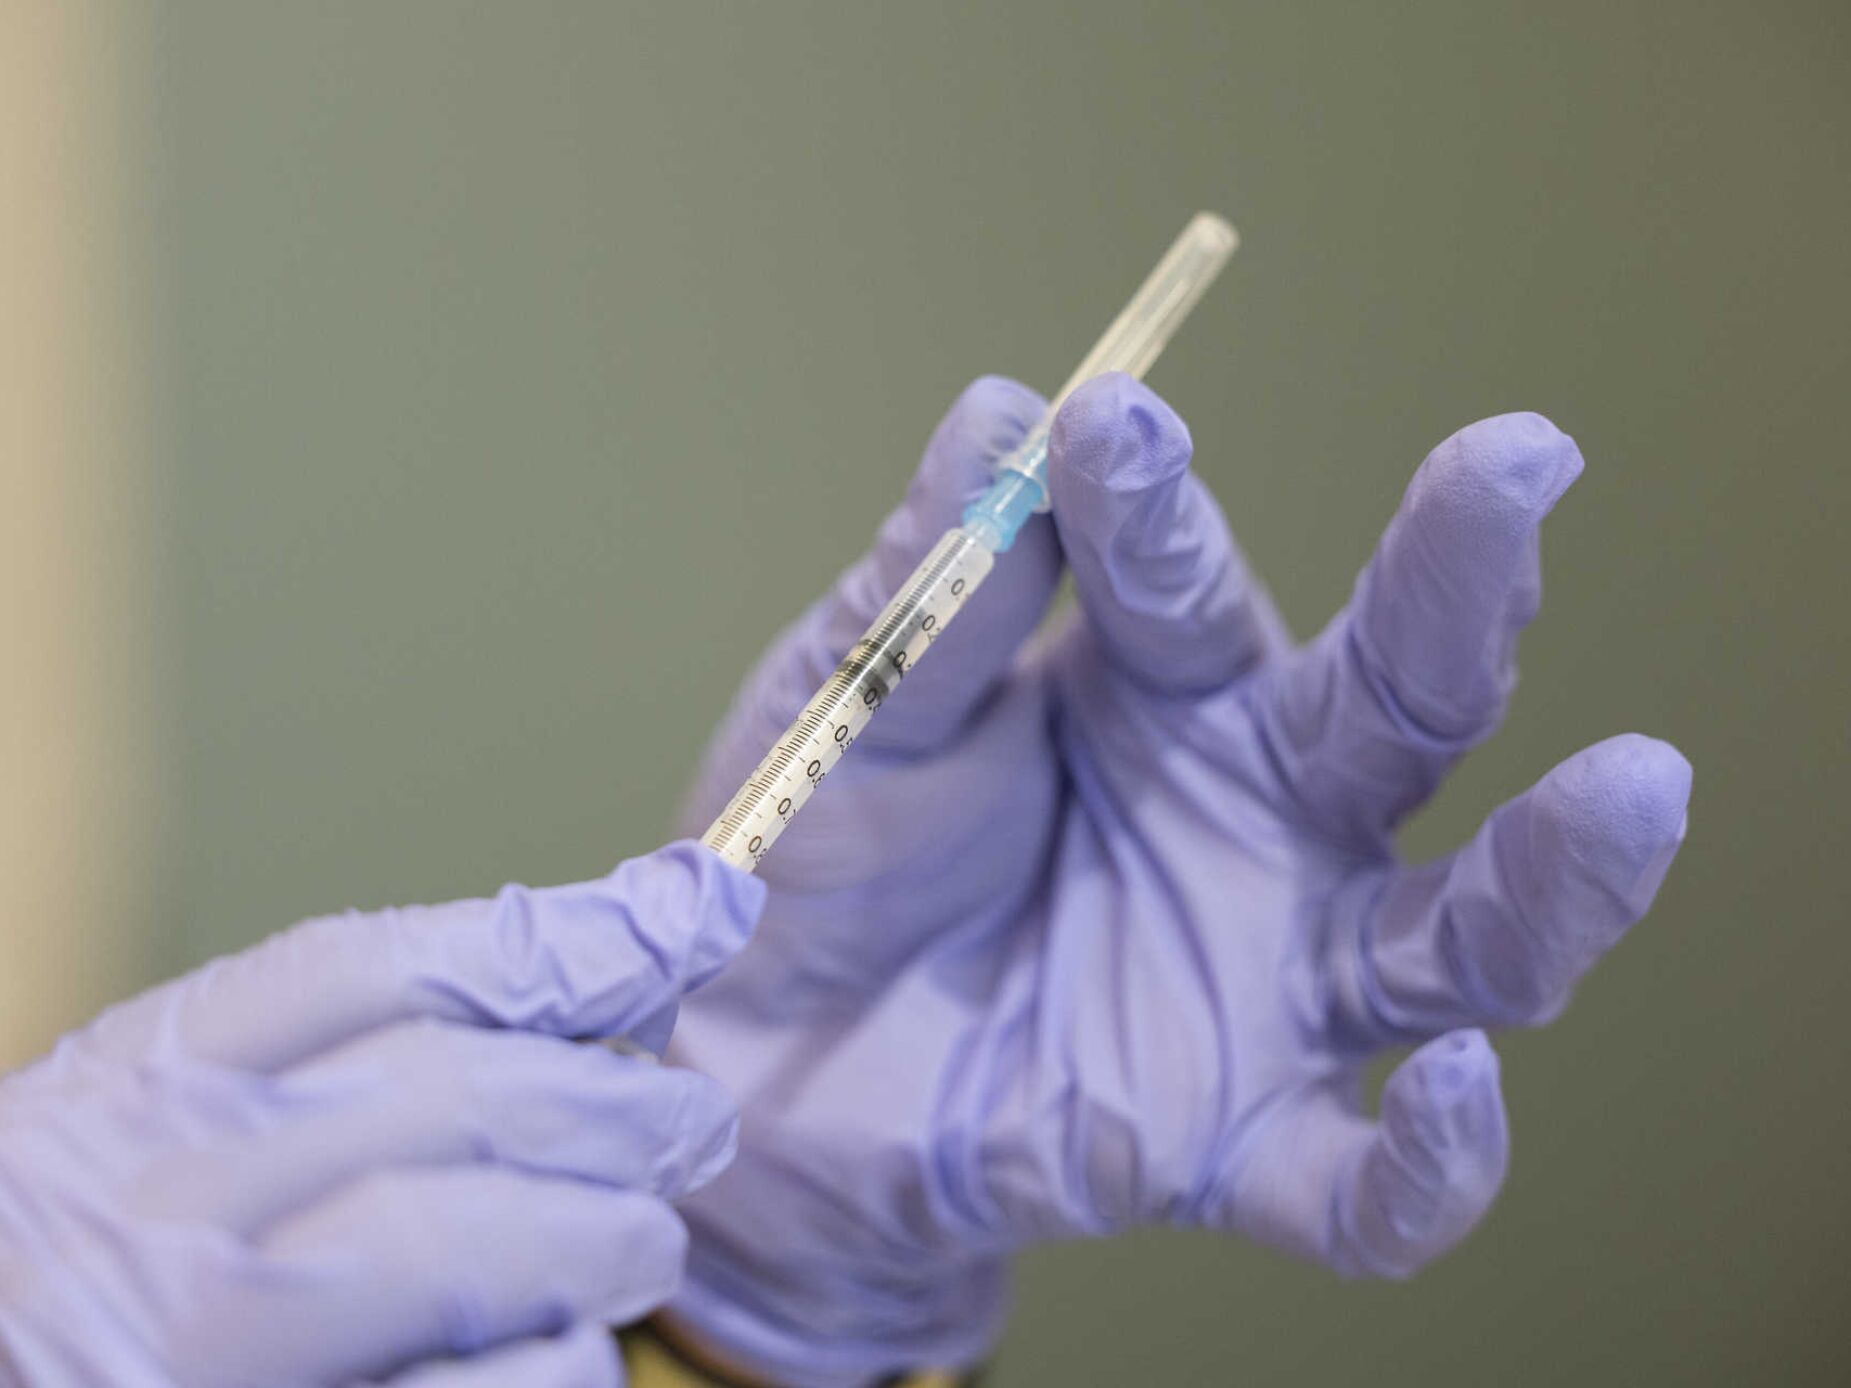 Comissão Europeia quer aumentar prevenção de certos cancros pela vacinação